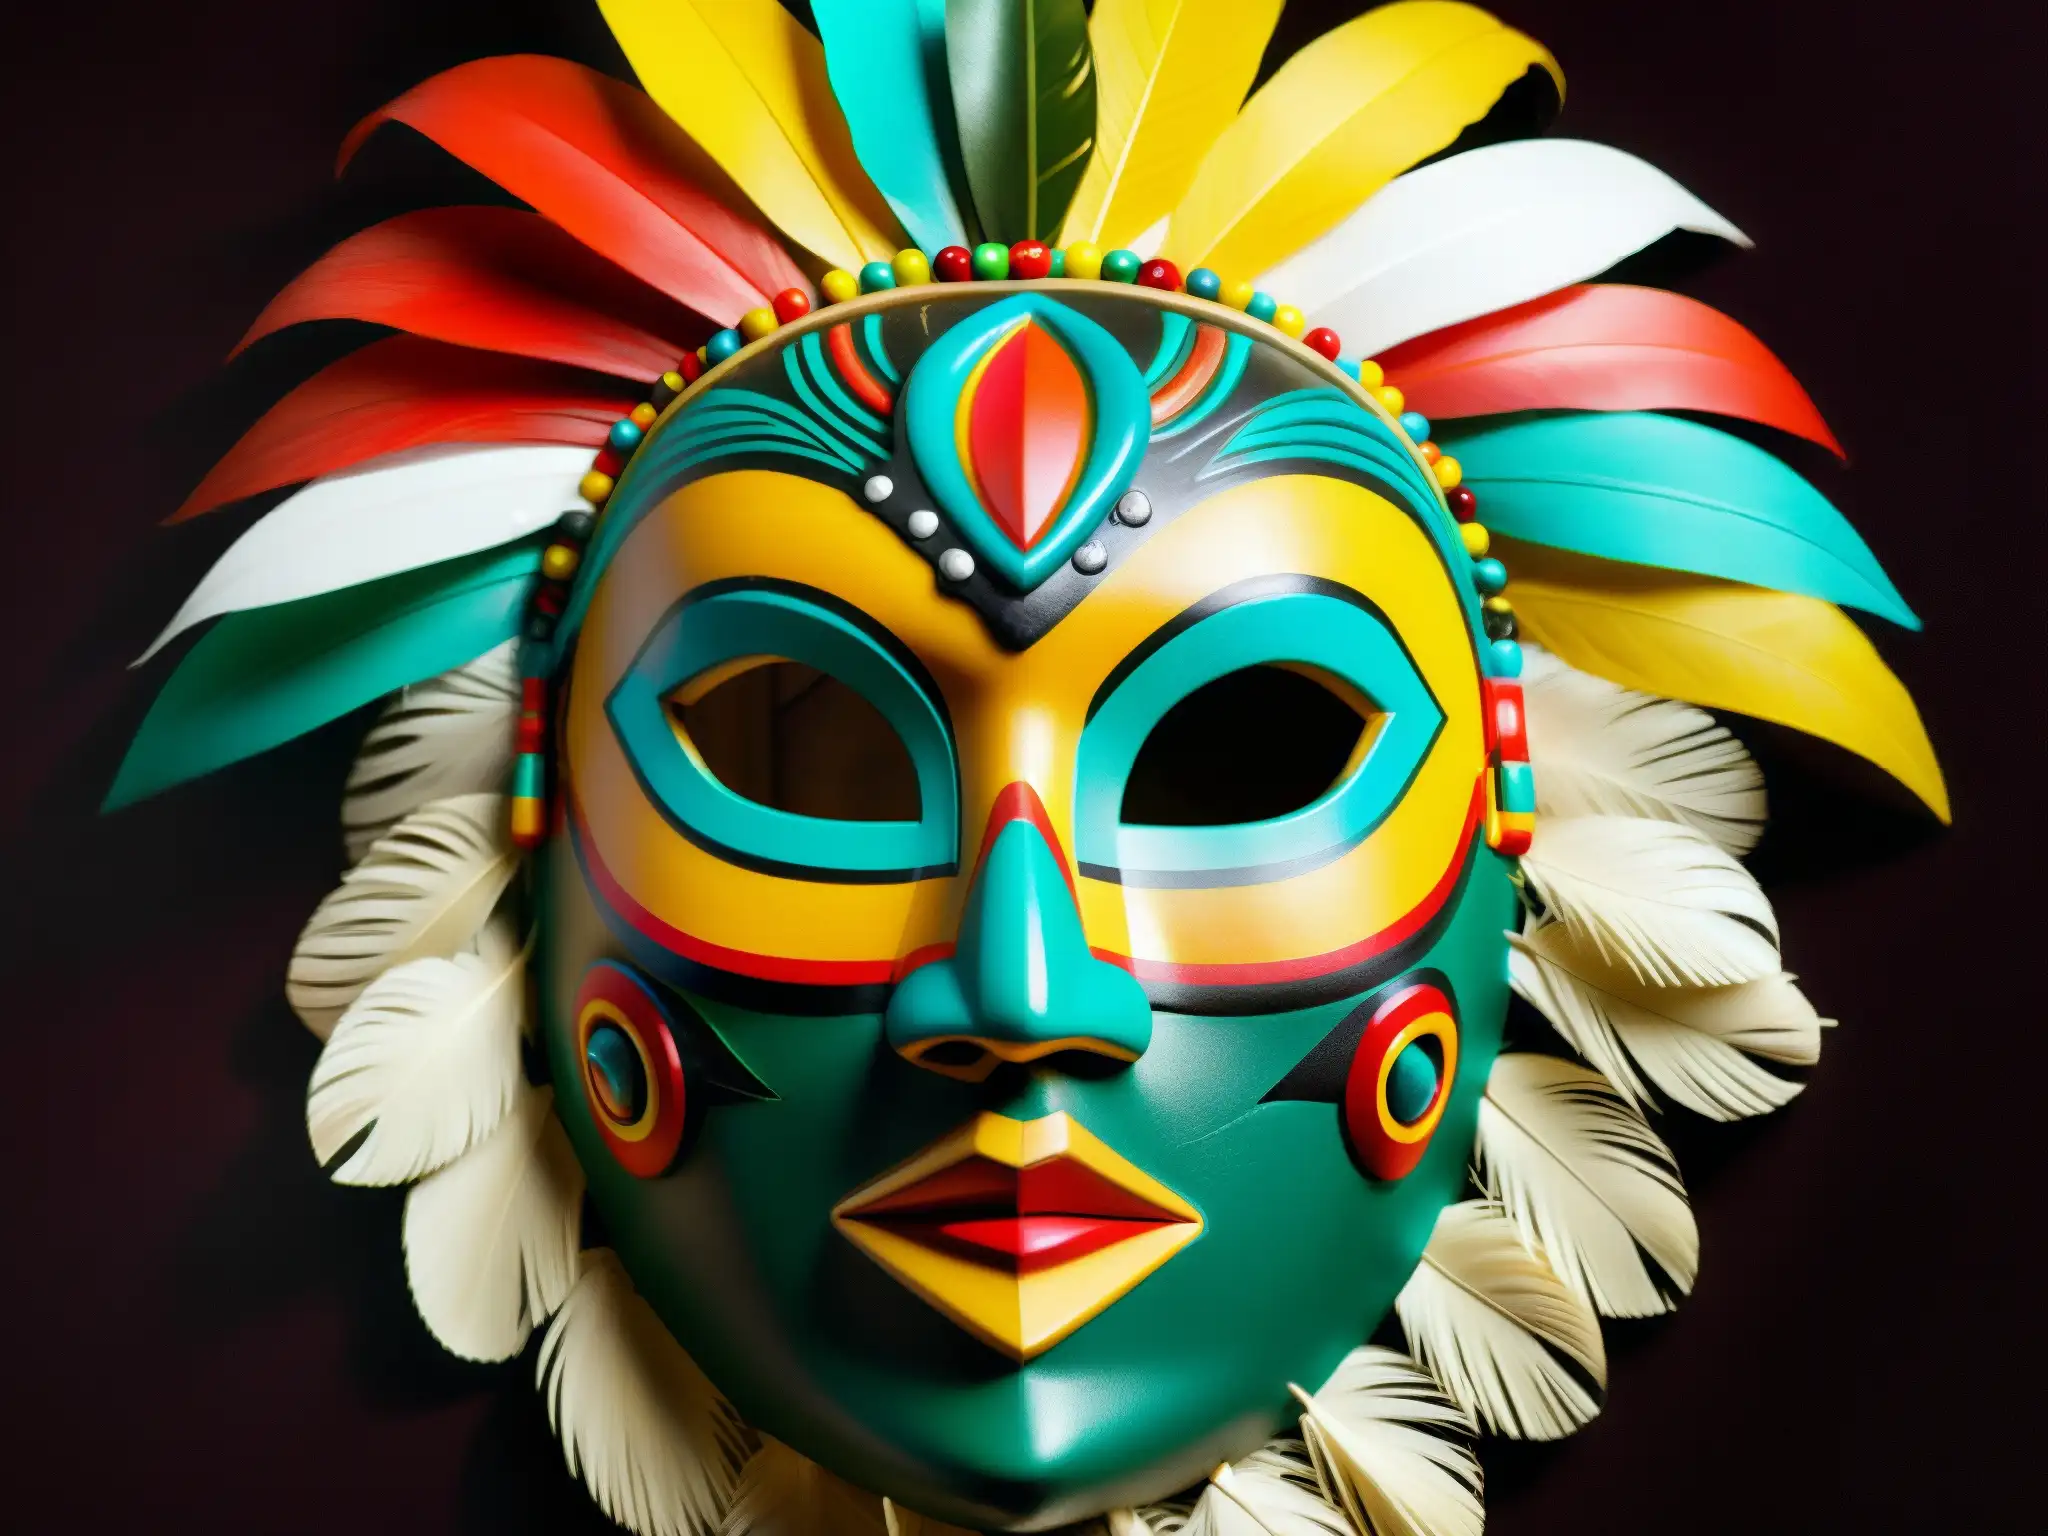 Una máscara mexicana tradicional de un nahual, con detalles intrincados y colores vibrantes, resalta la transformación mística en la cultura popular